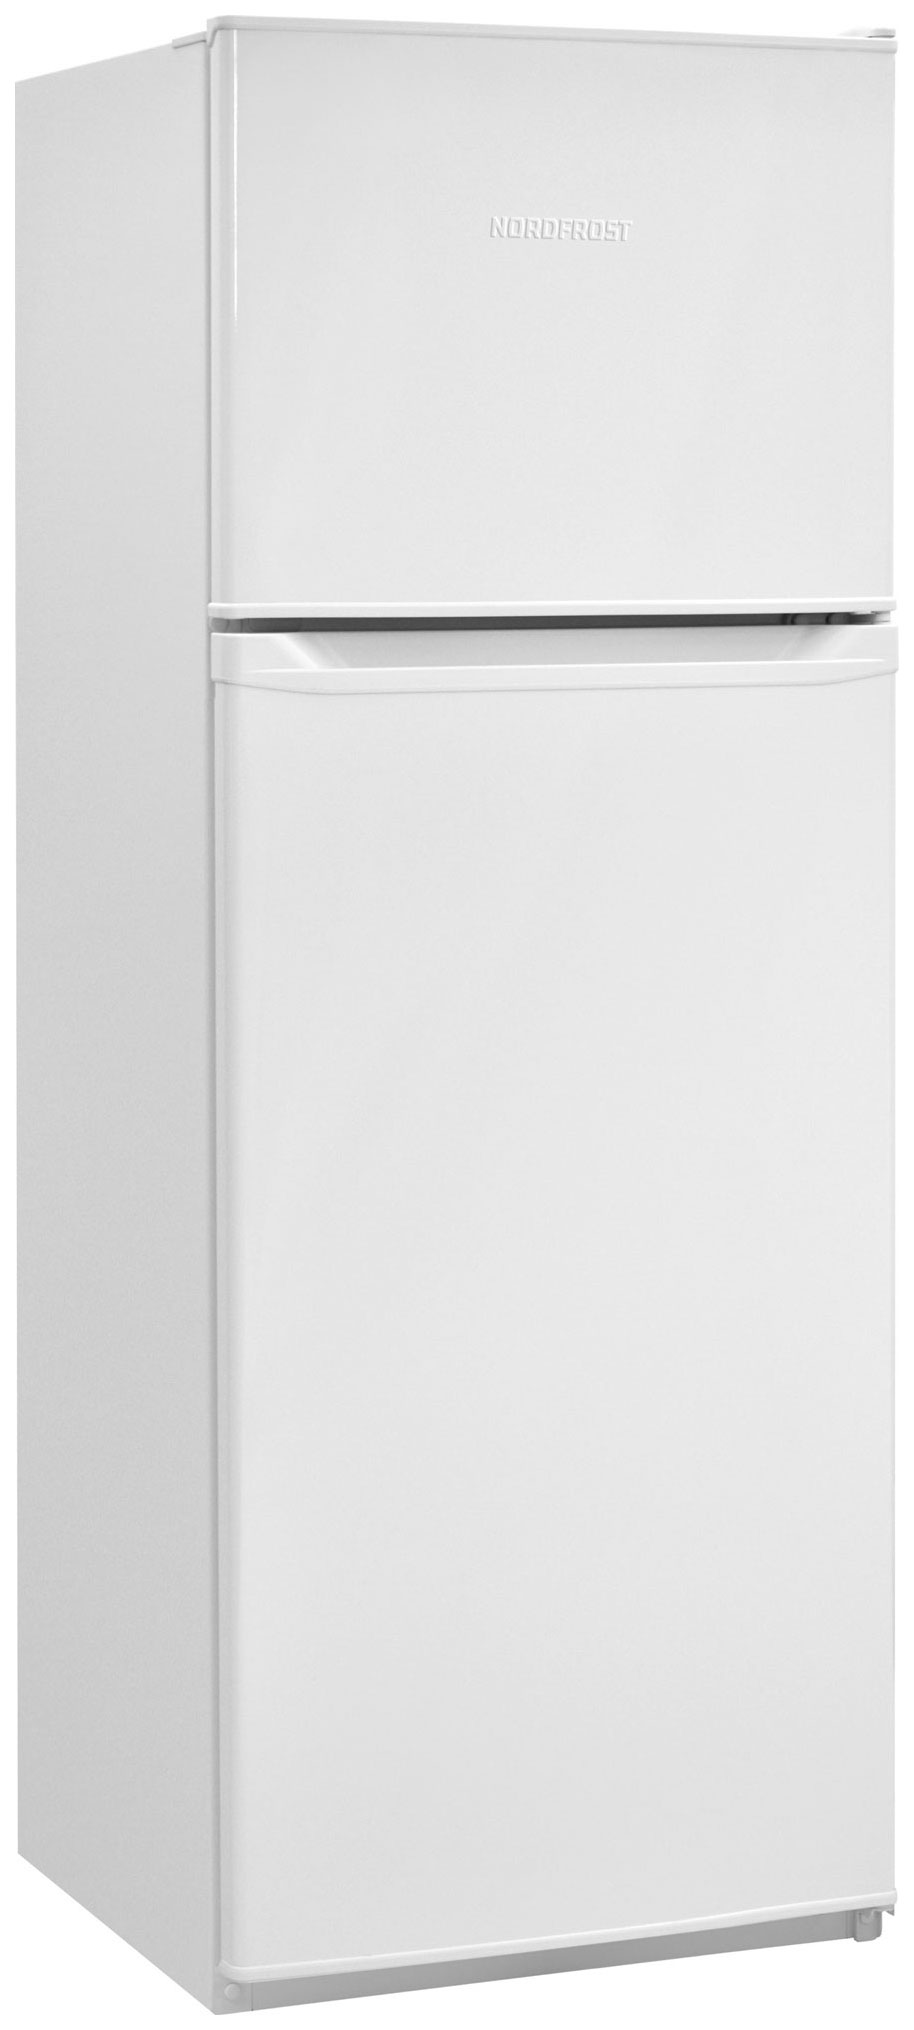 Холодильник NordFrost NRT 145 032 белый игрушка жевательная всегда вместе tpr 18 5 см круг конфета шестерёнка